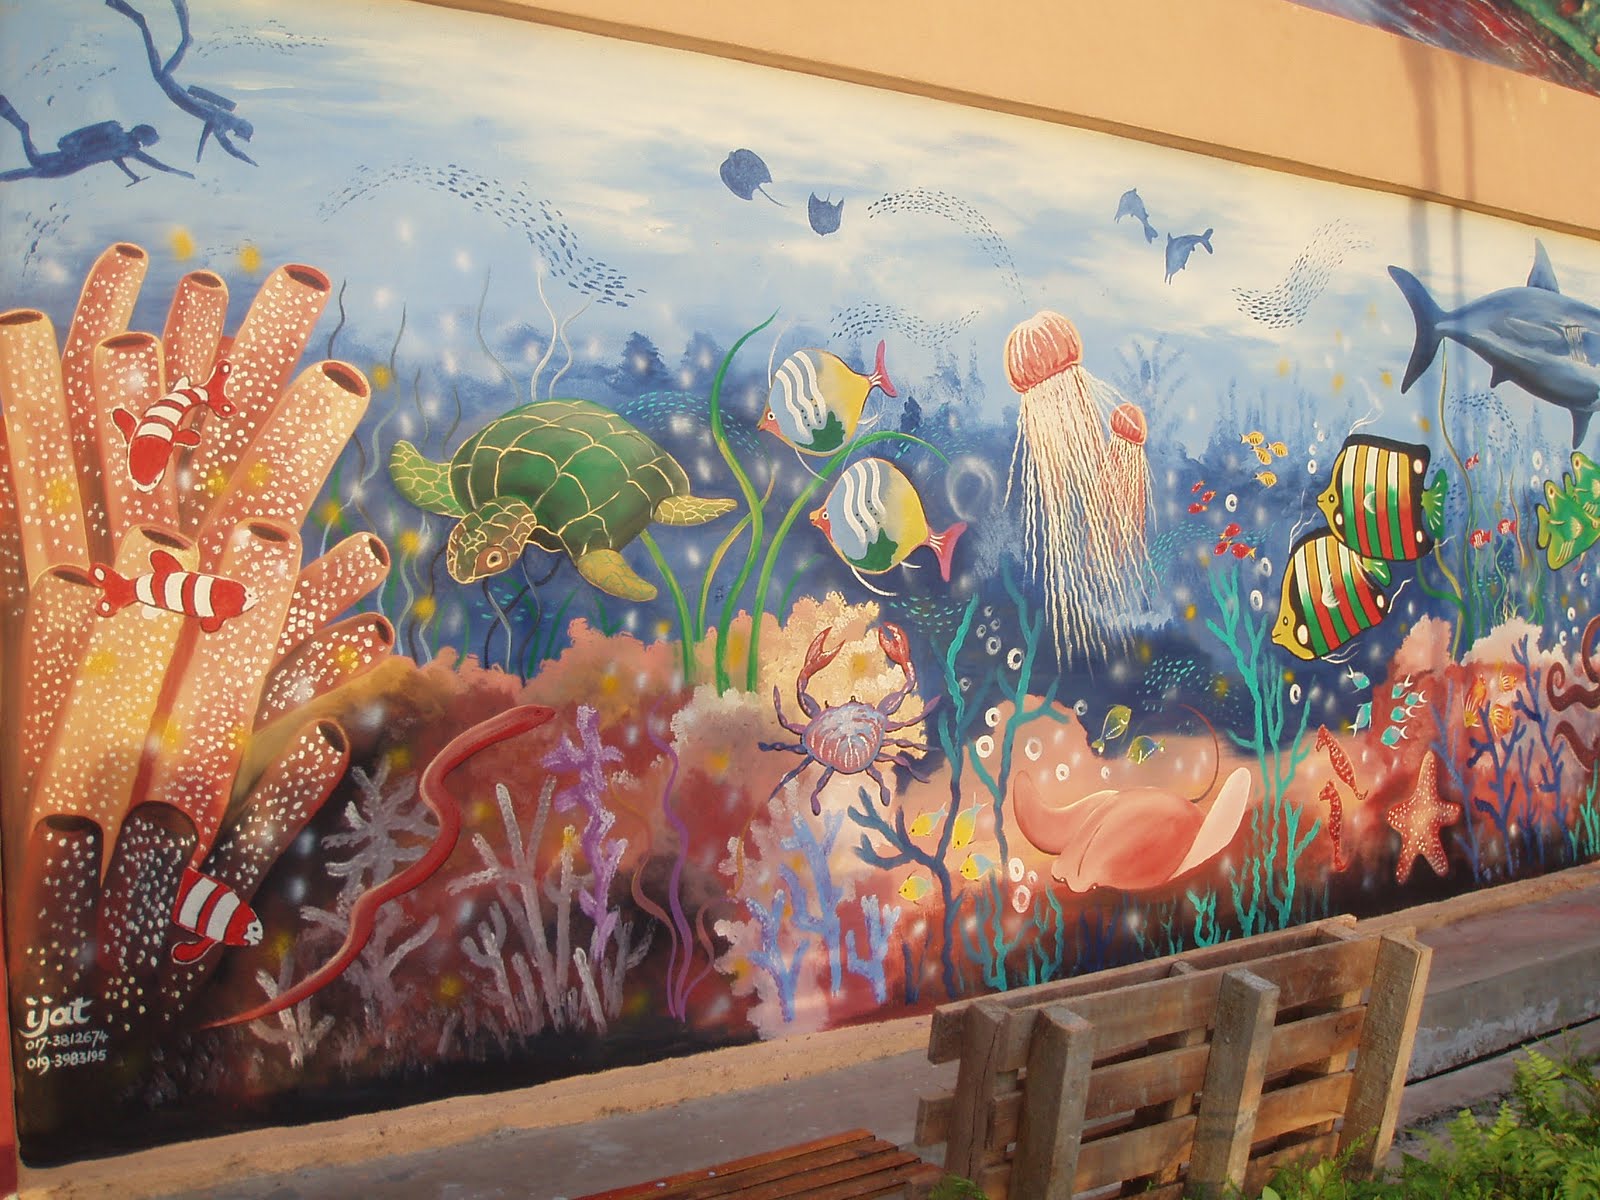 Pelukis Mural Shah Alam: Dasar Laut